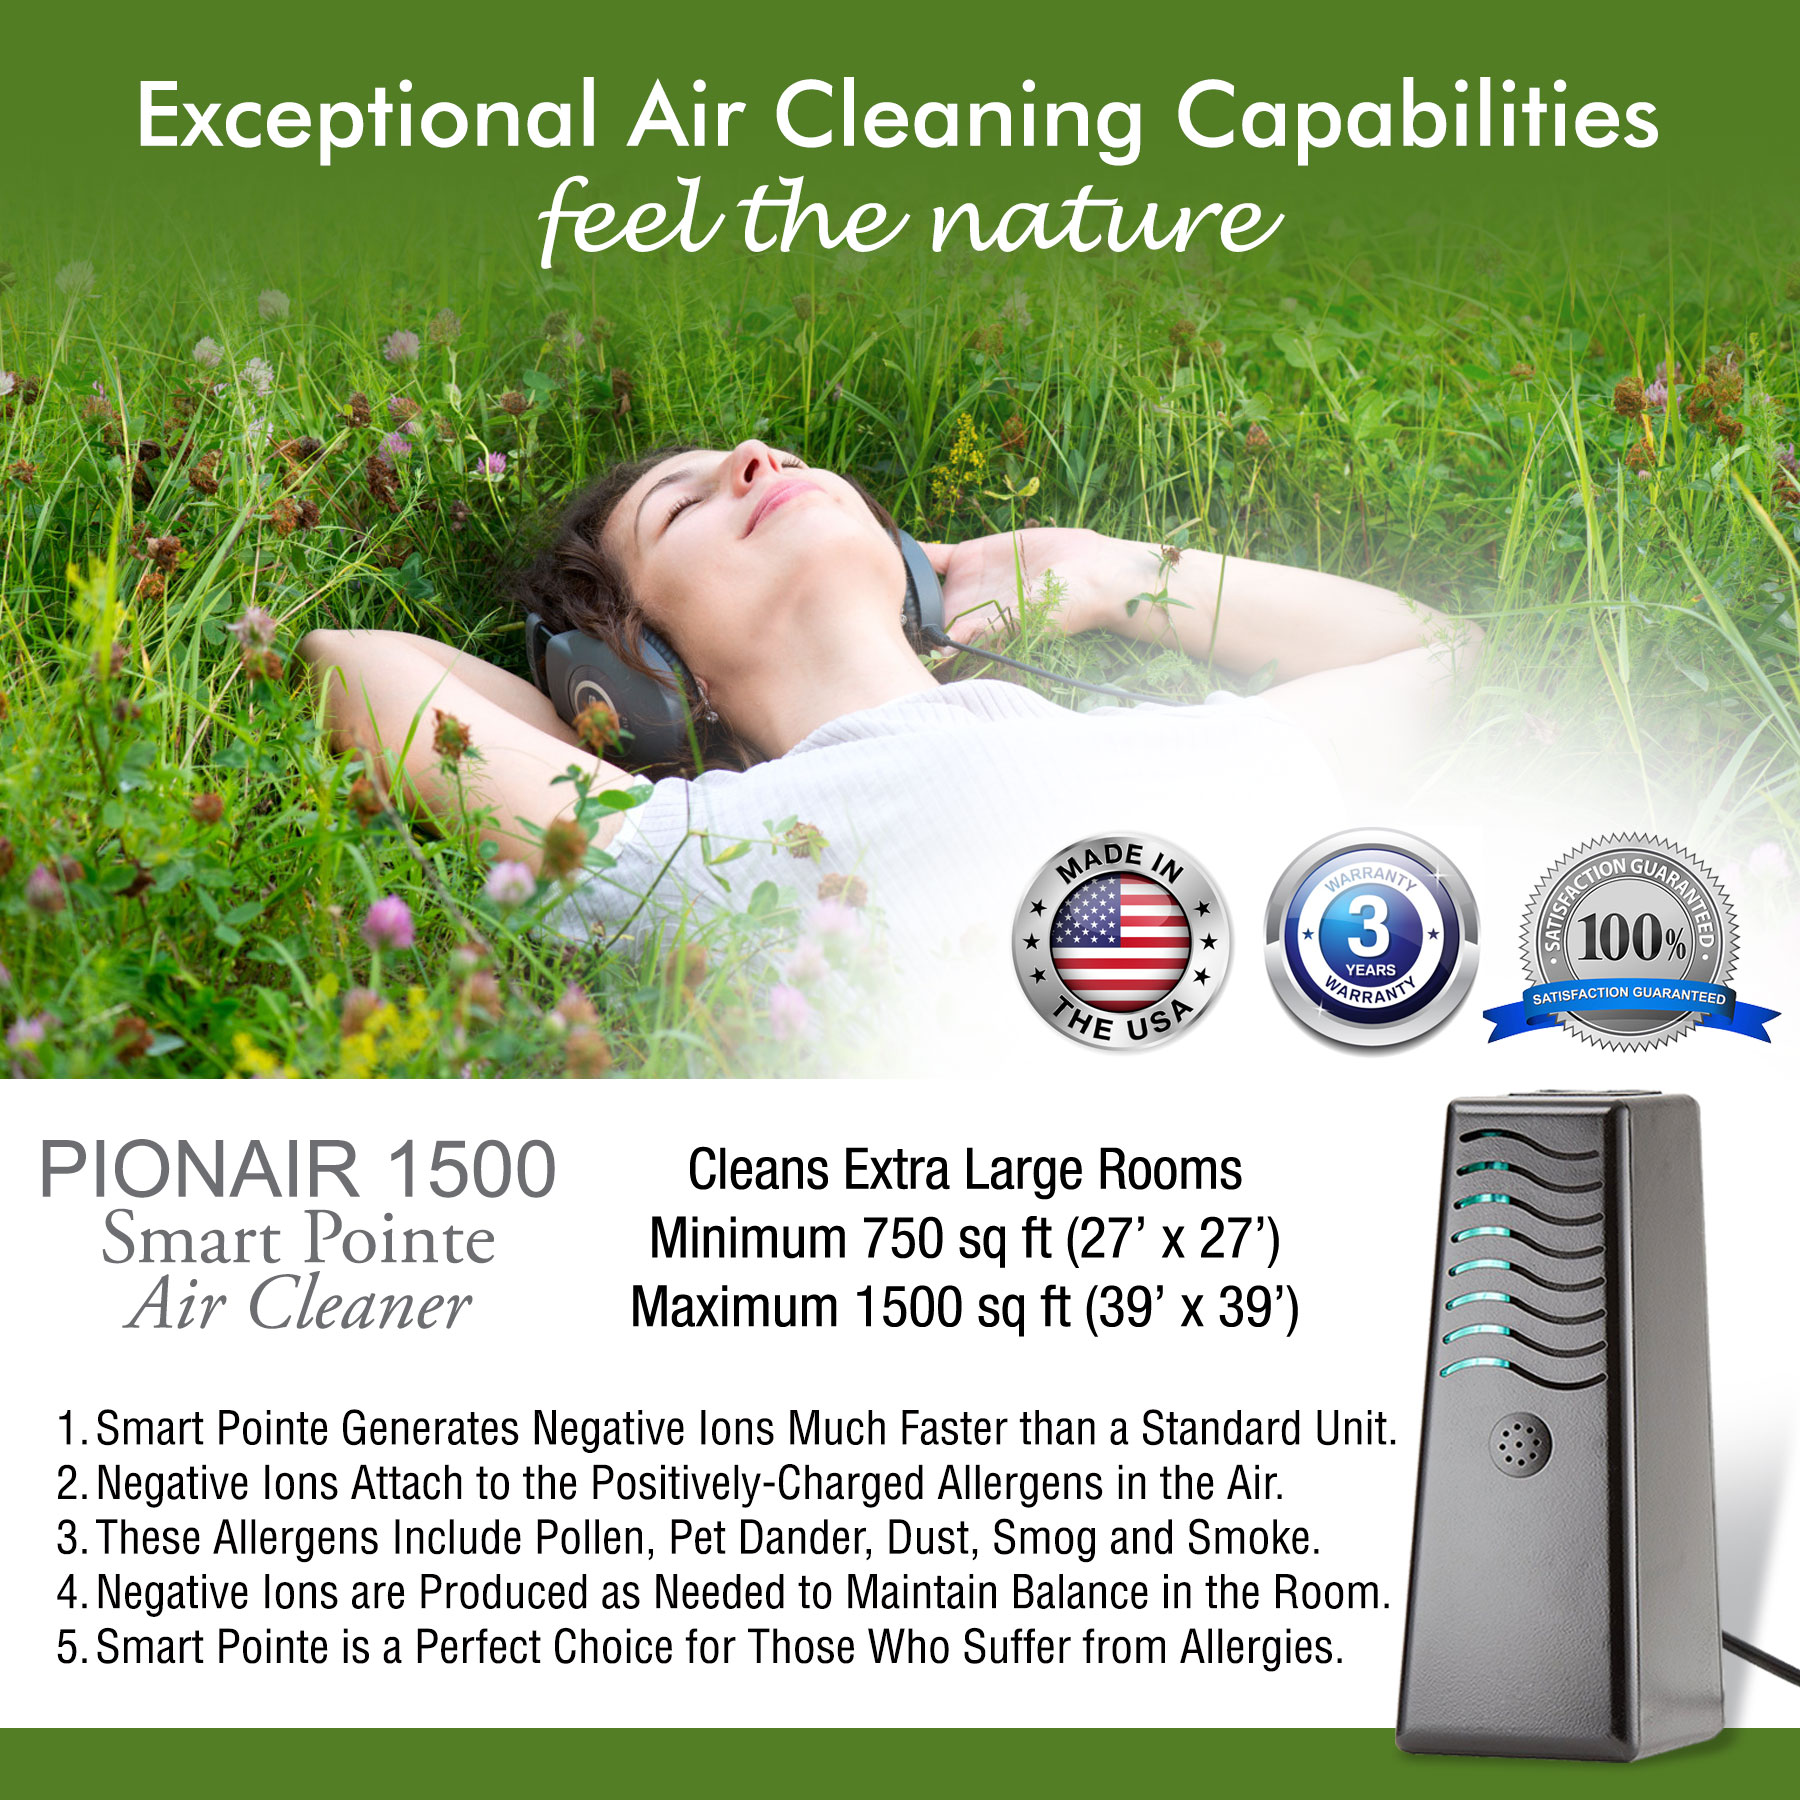 PIONAIR 1500 Smart Pointe - 4 in 1 Whole Home Air Purifier